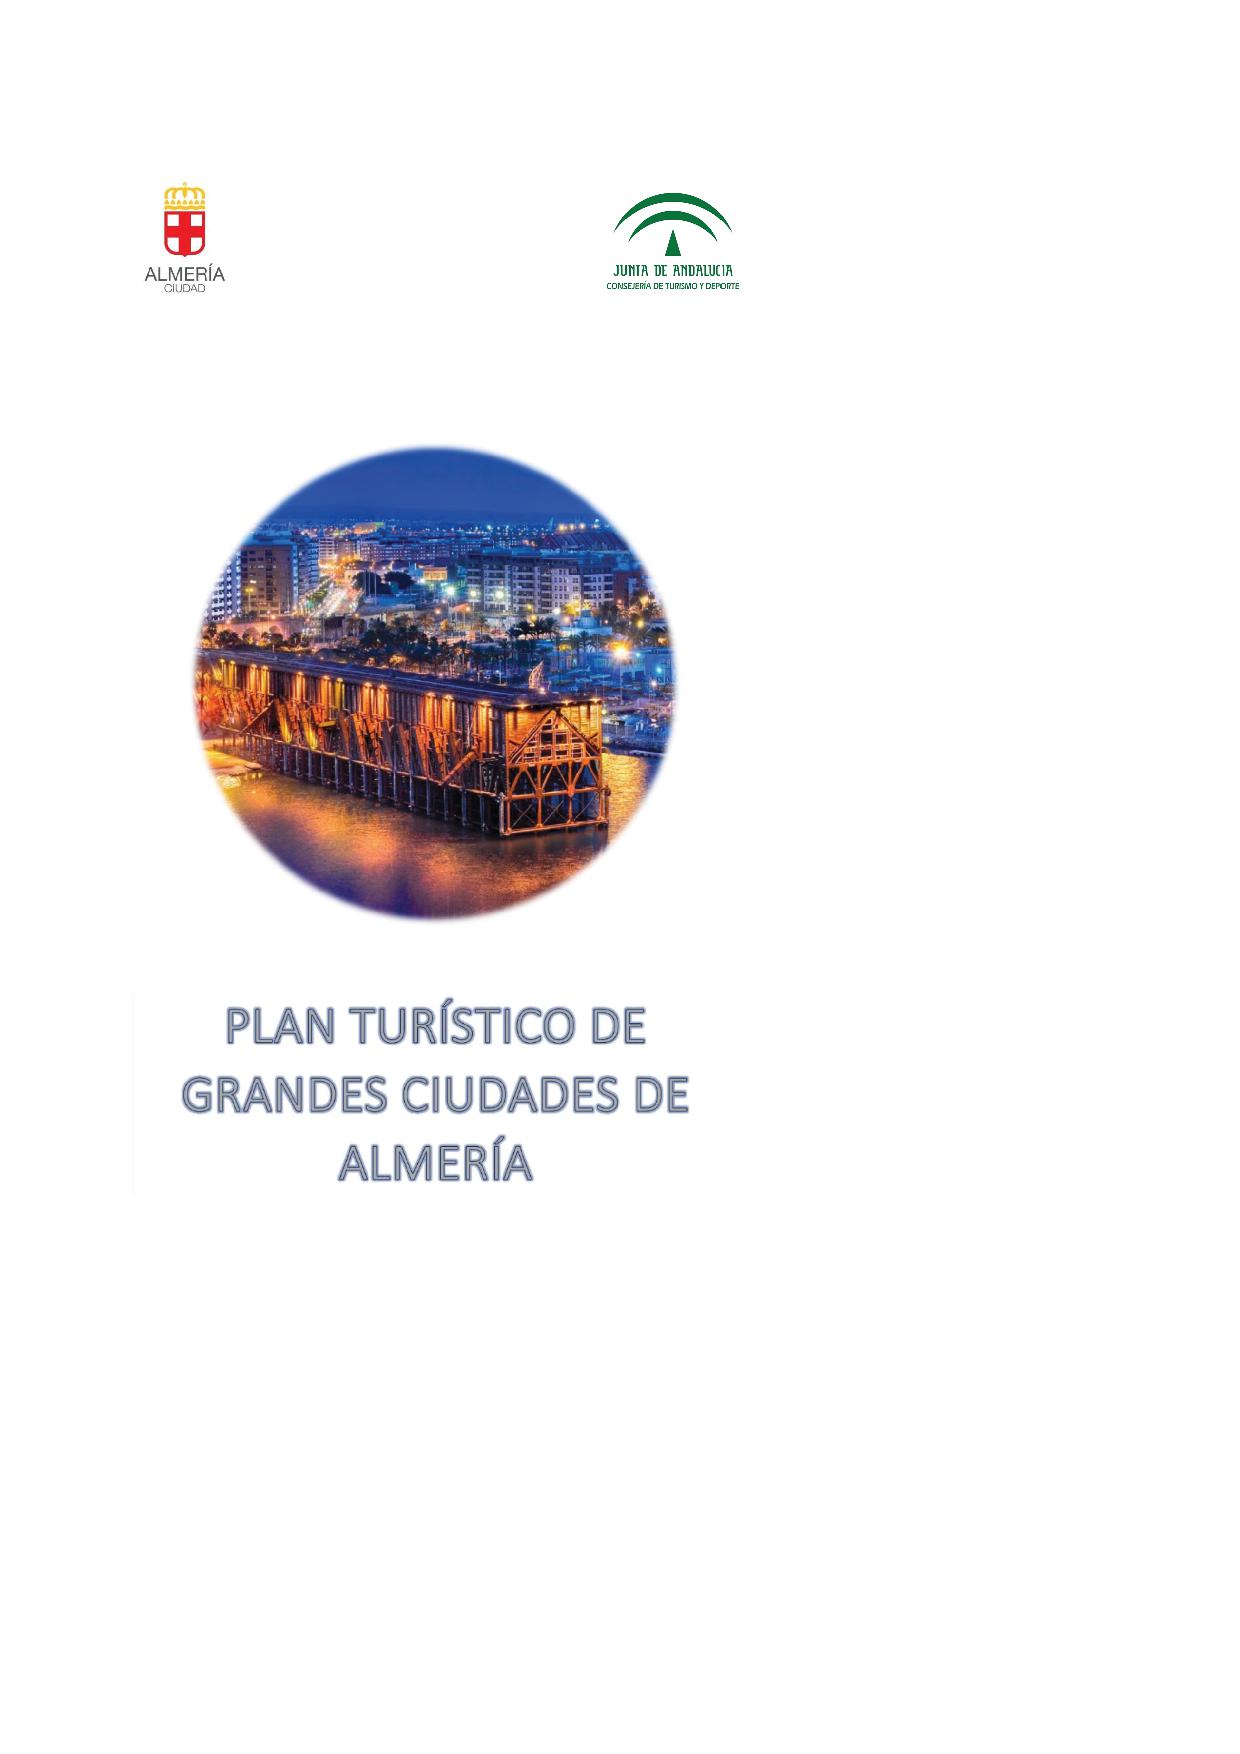 Portada del Plan turístico de Almería